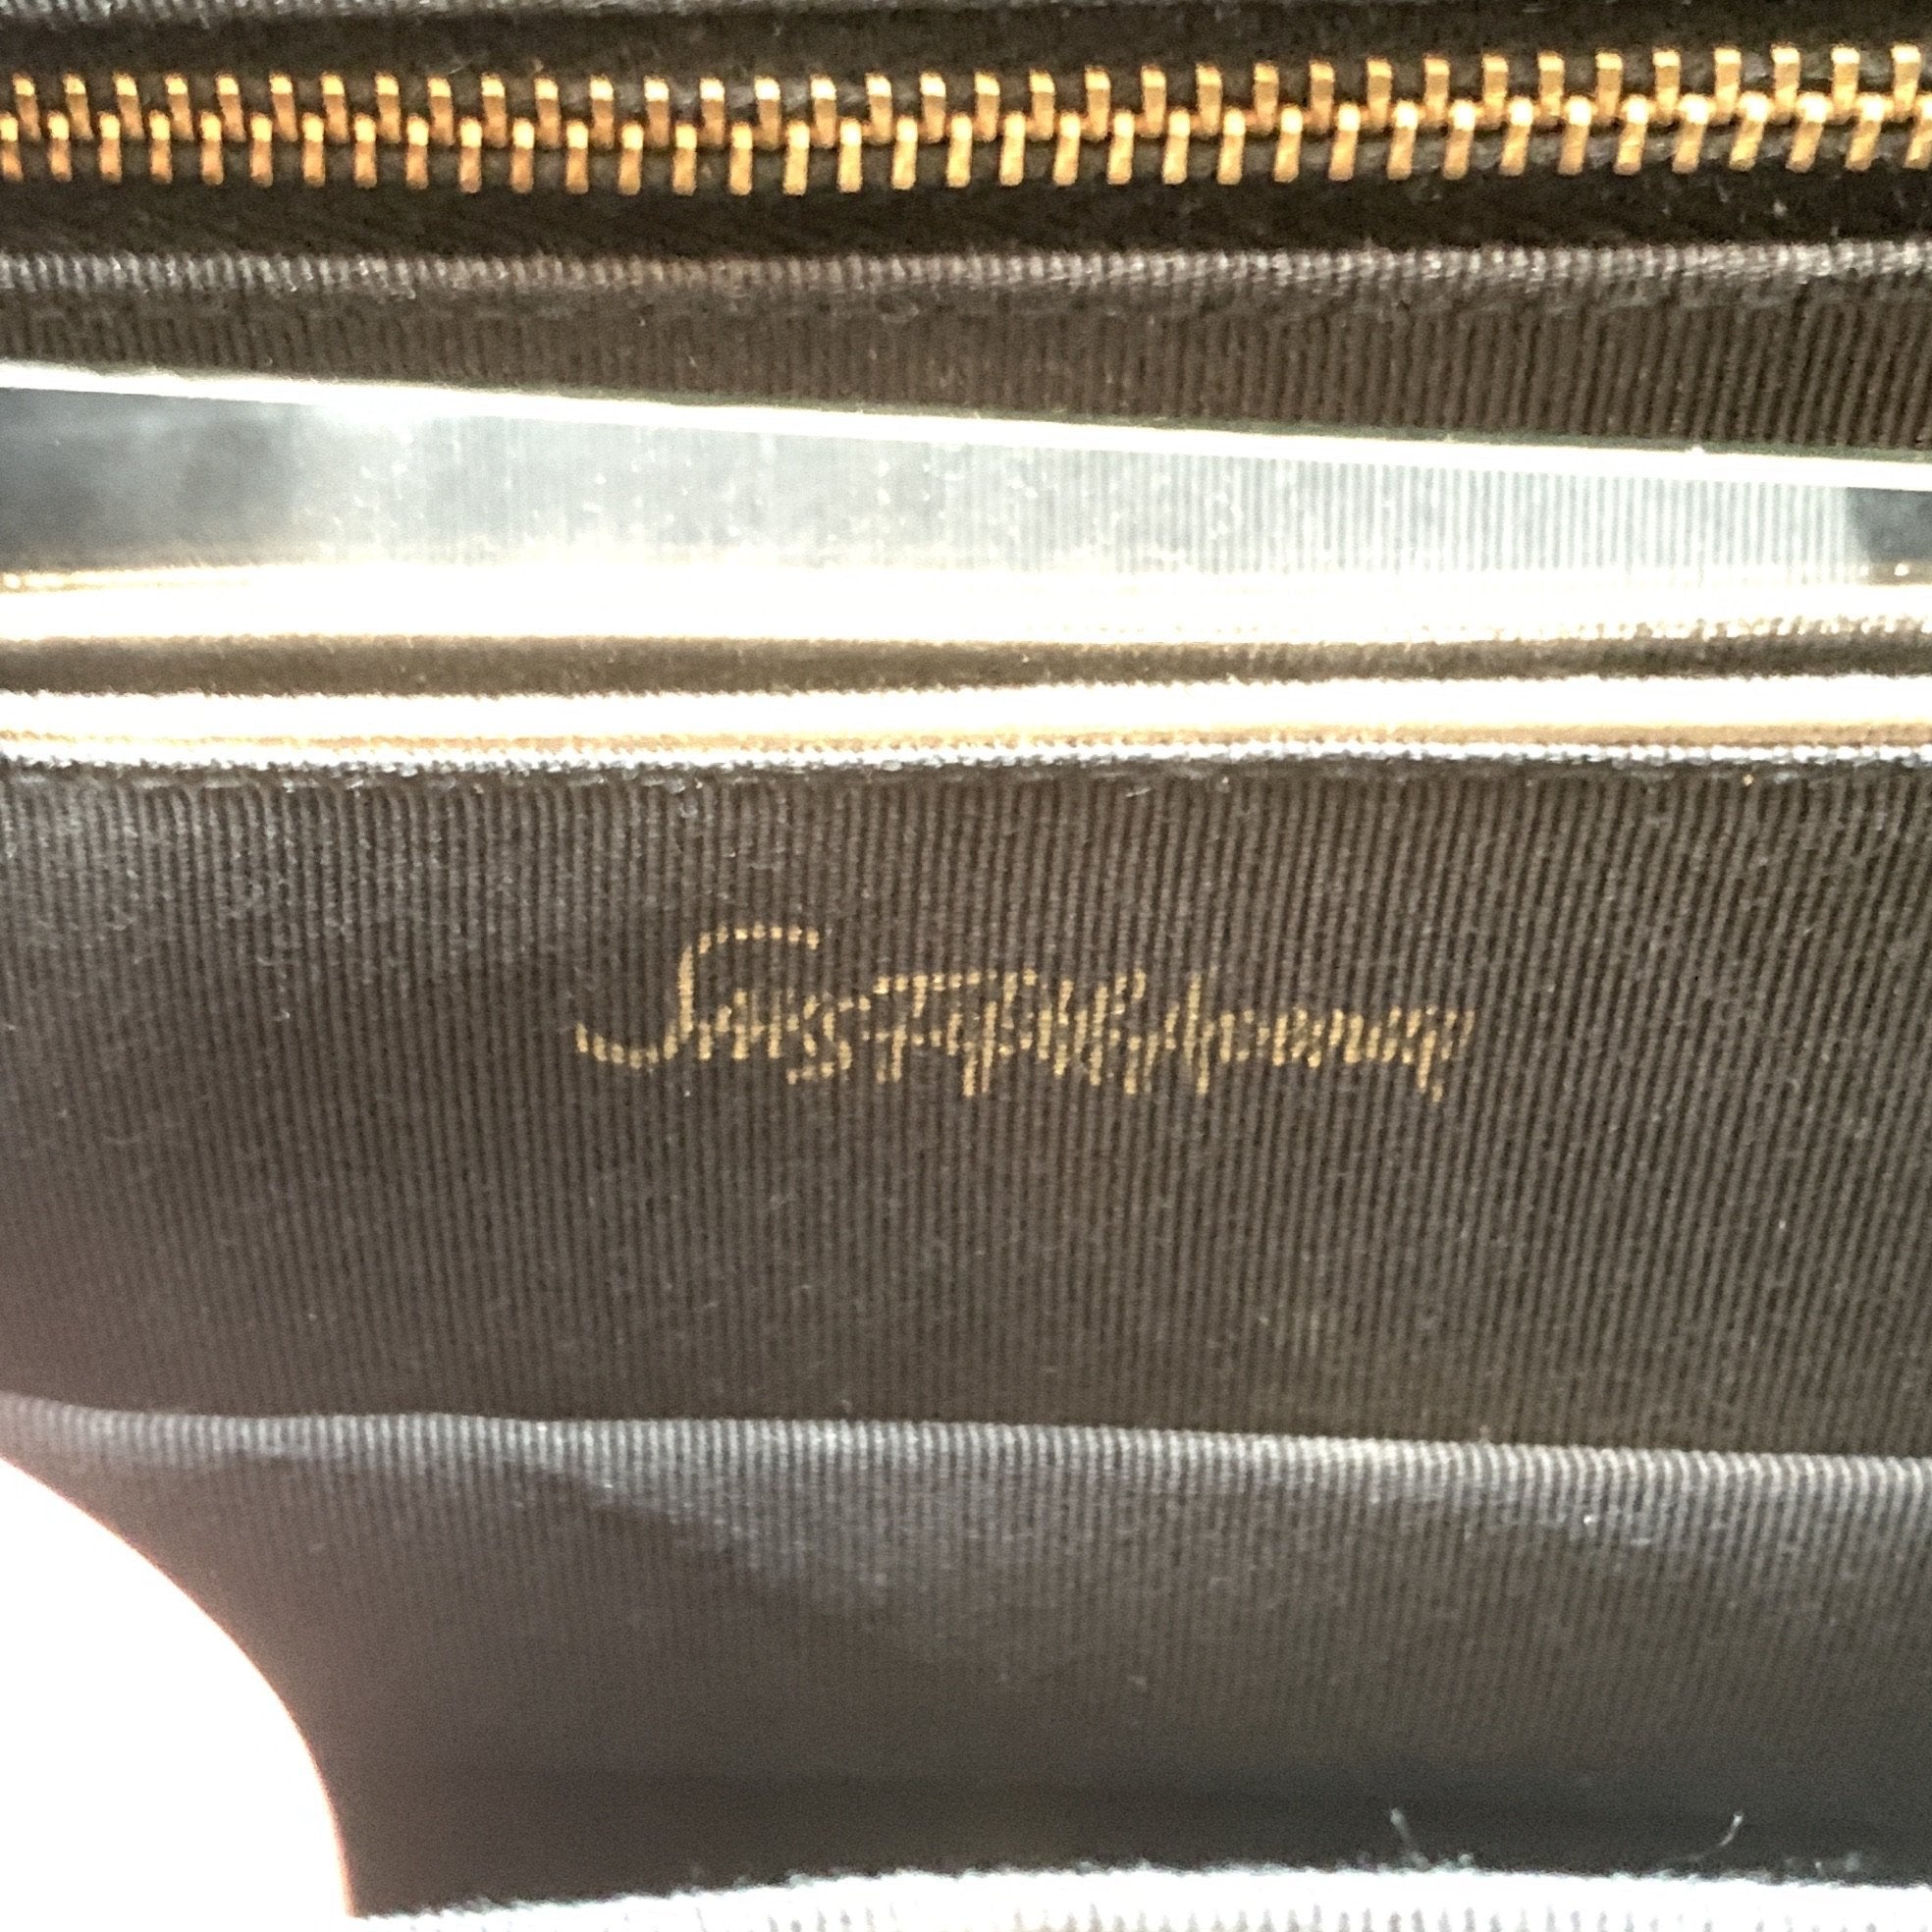 Louis Vuitton, Bags, Vintage Louis Vuitton For Saks Fifth Avenue Wallet